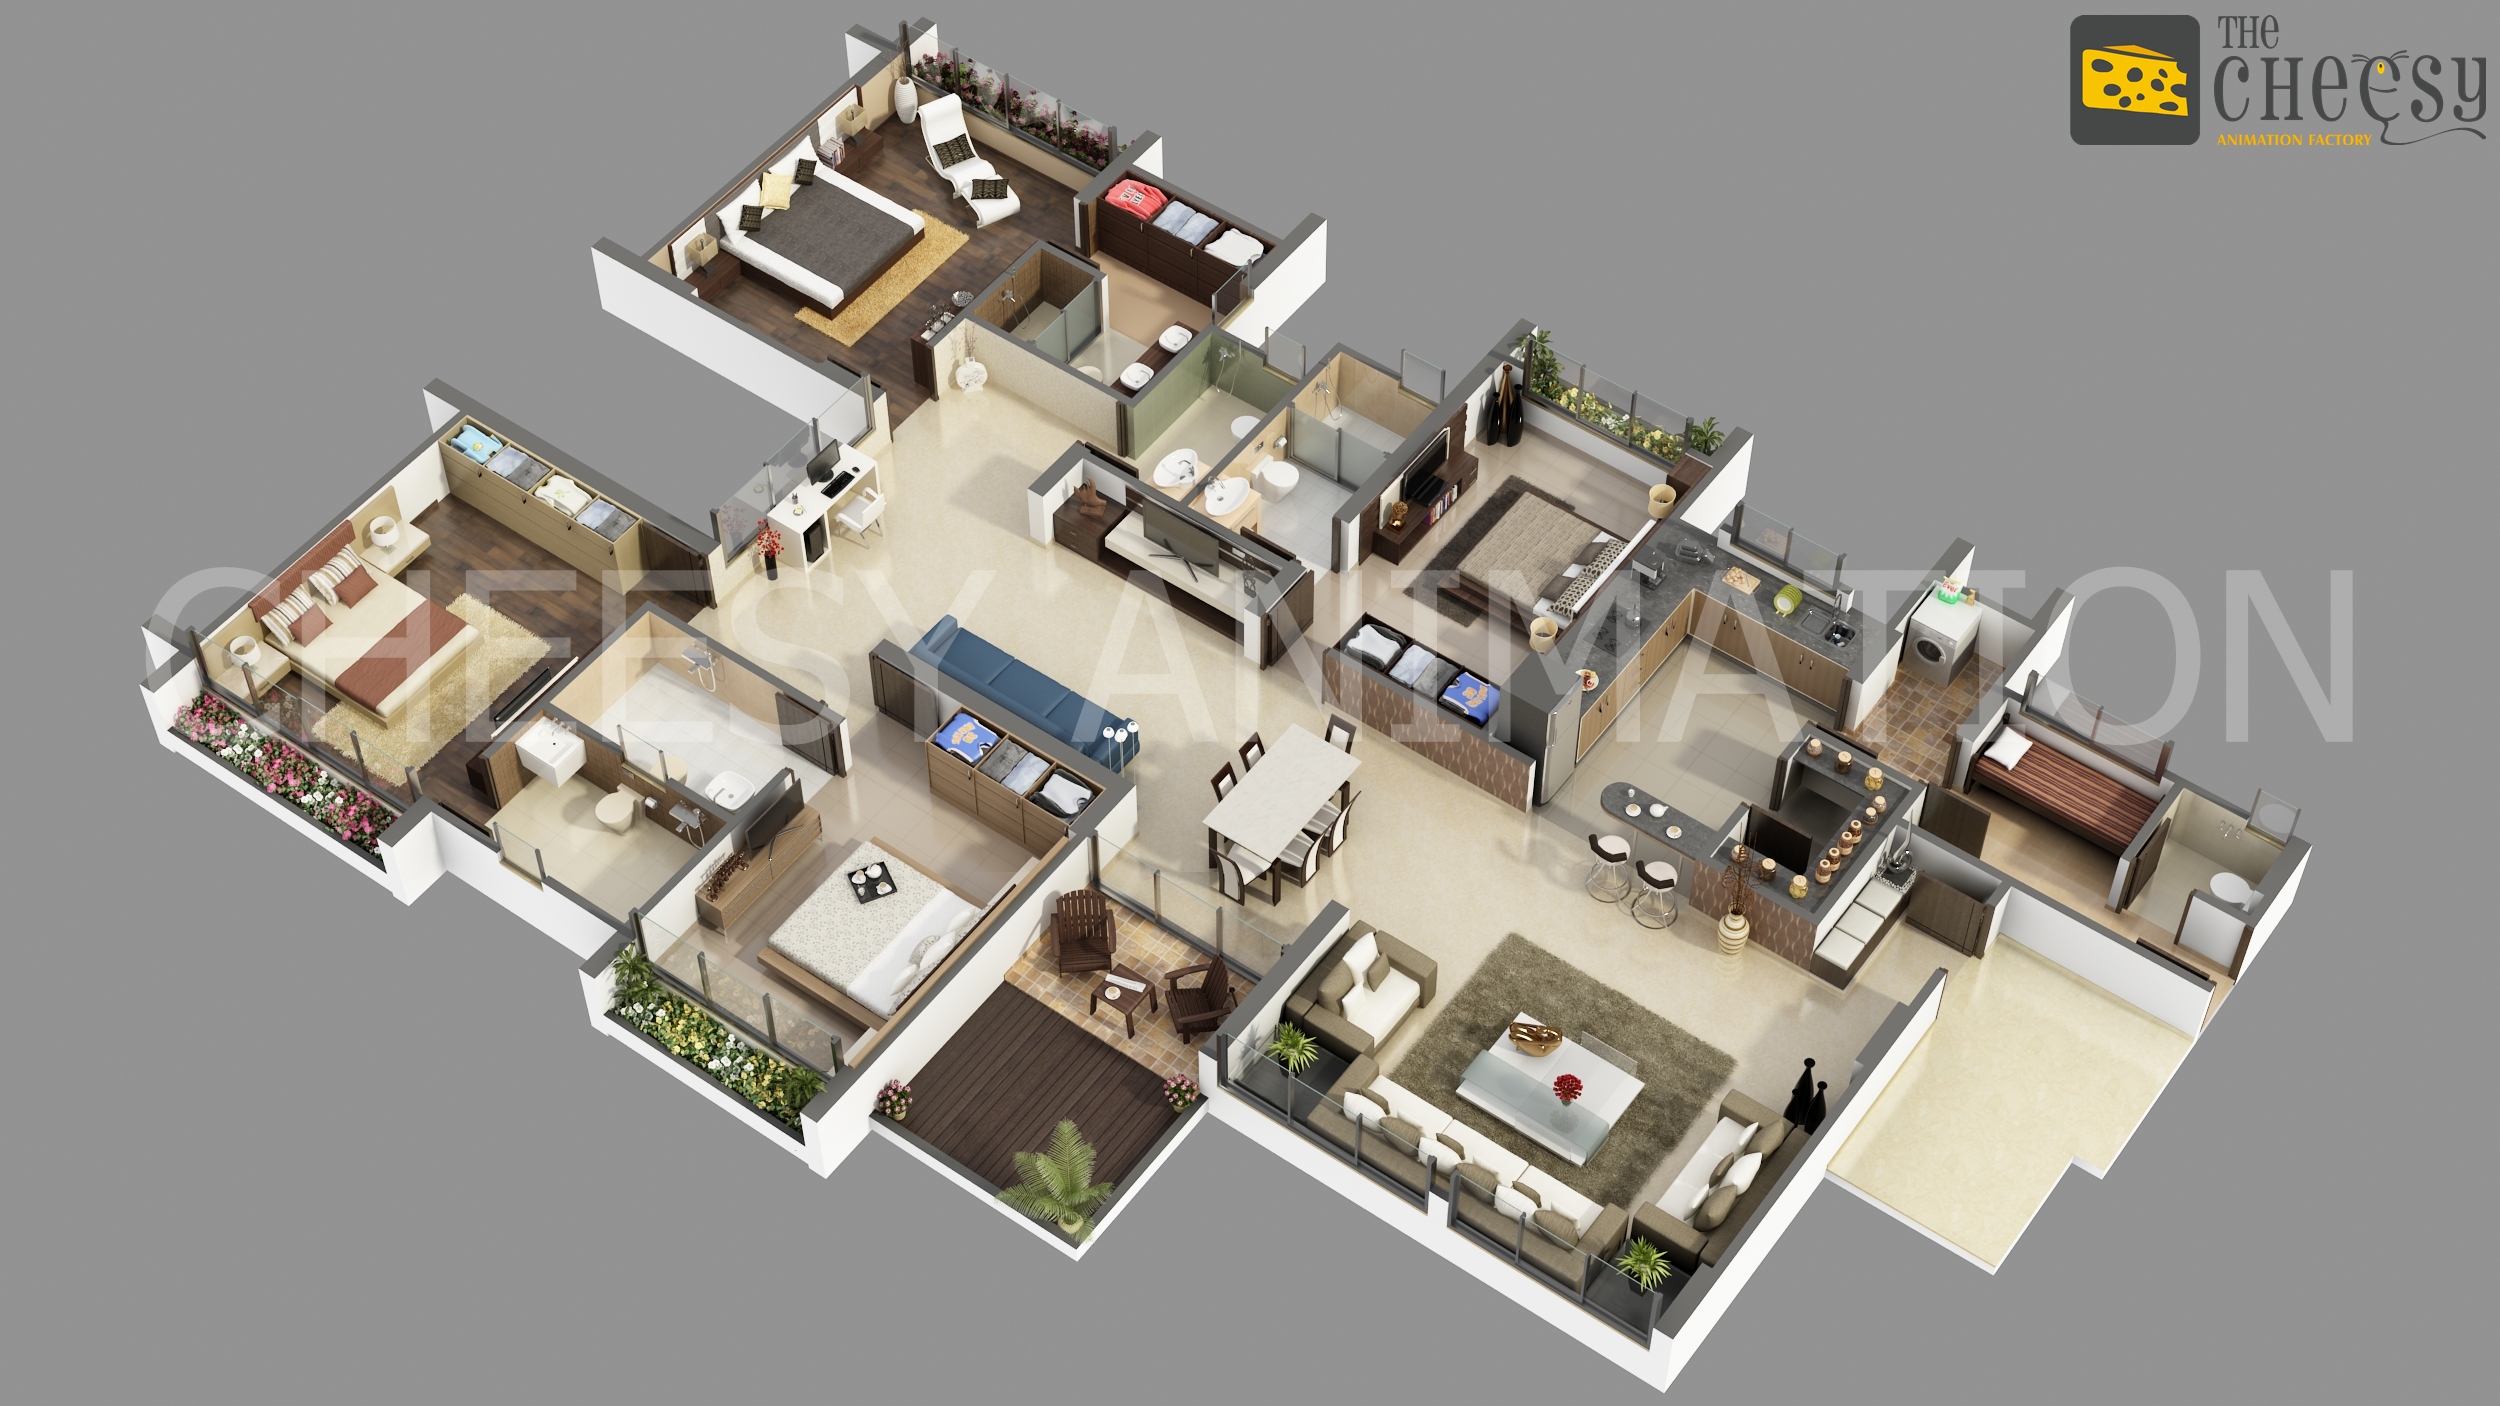  3D  Floor Plan  3D  Floor Plan  For House  3D  Floor Plan  